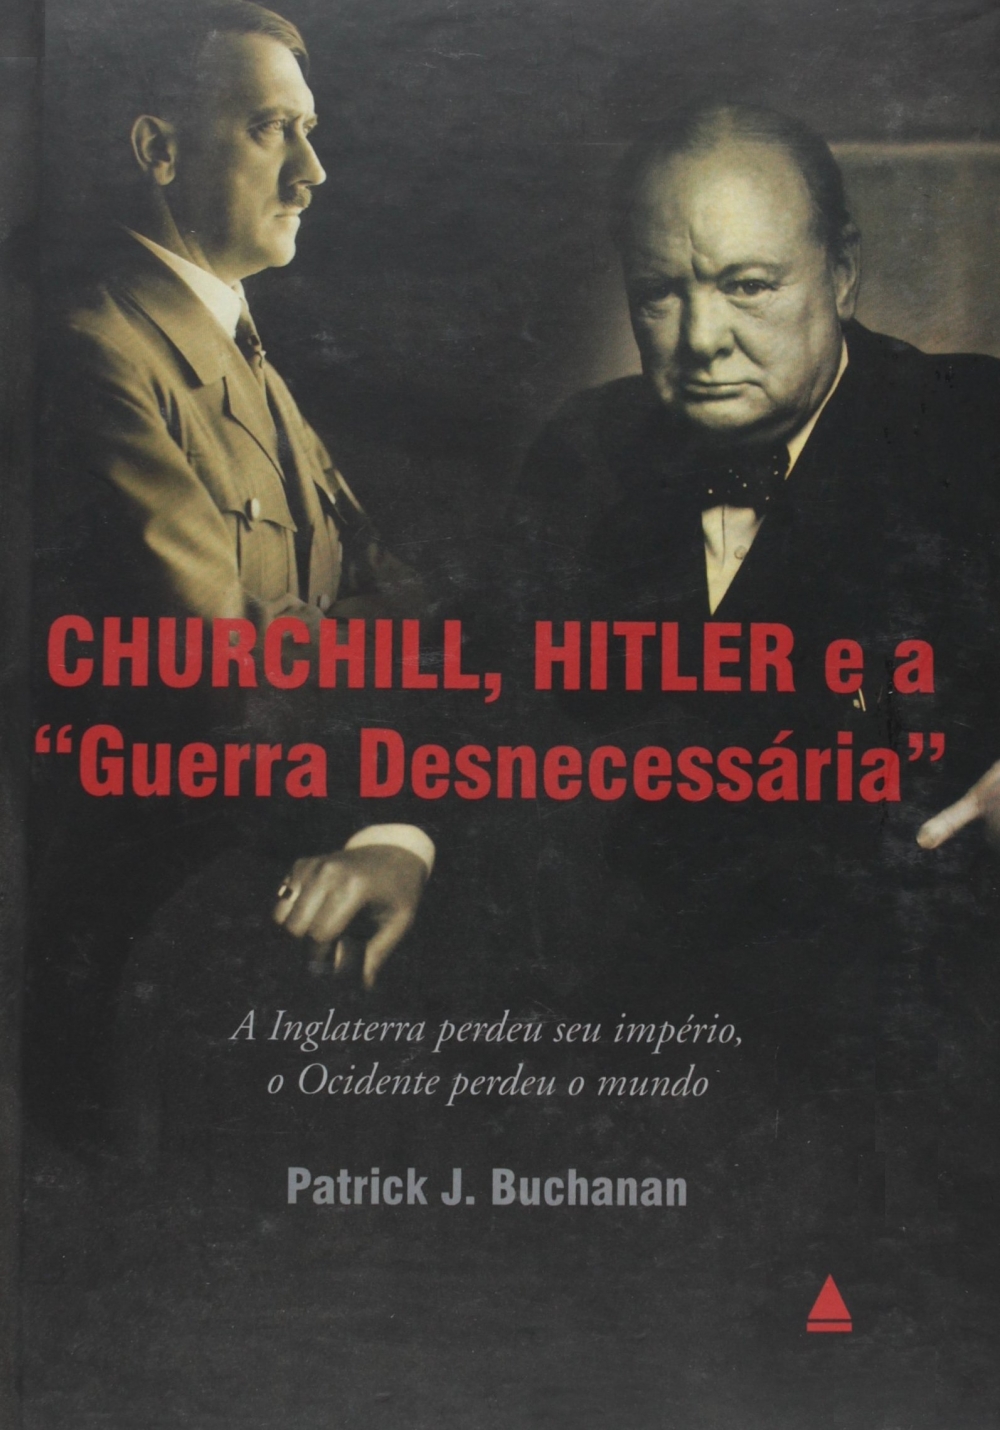 Churchill, Hitler e a "Guerra Desnecessária"